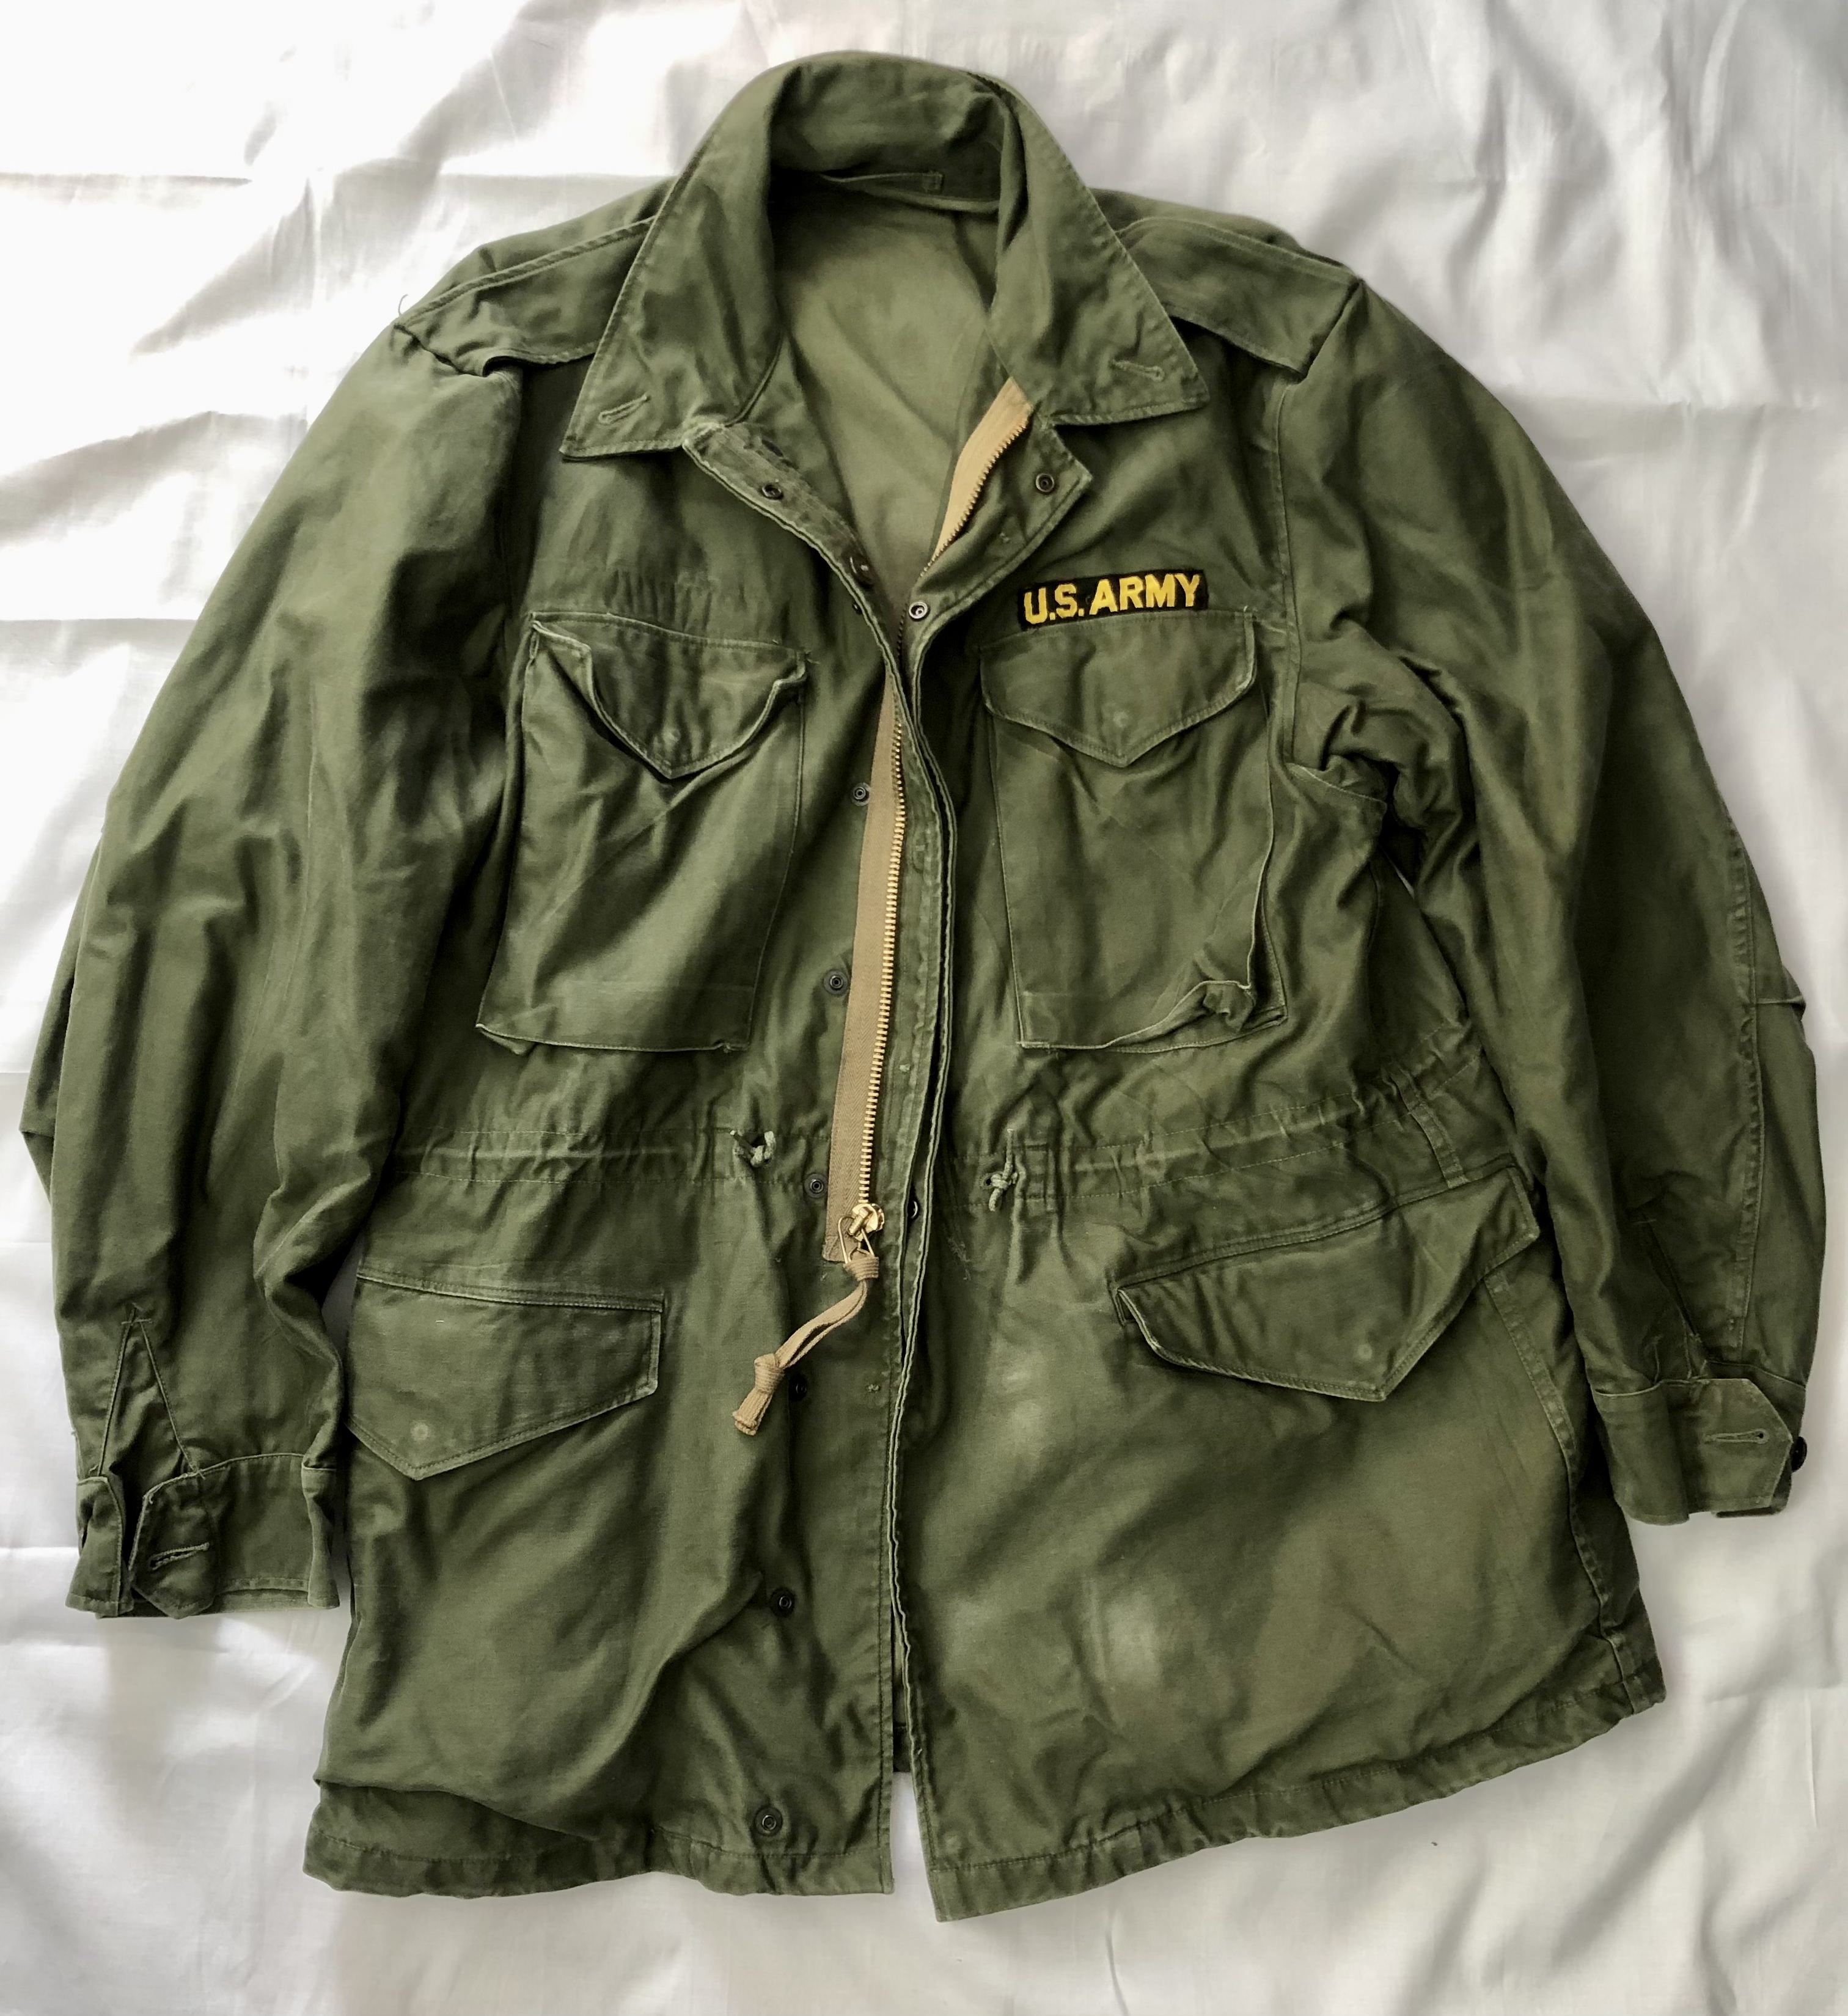 Parka/Field jacket M-1951 Large Regular